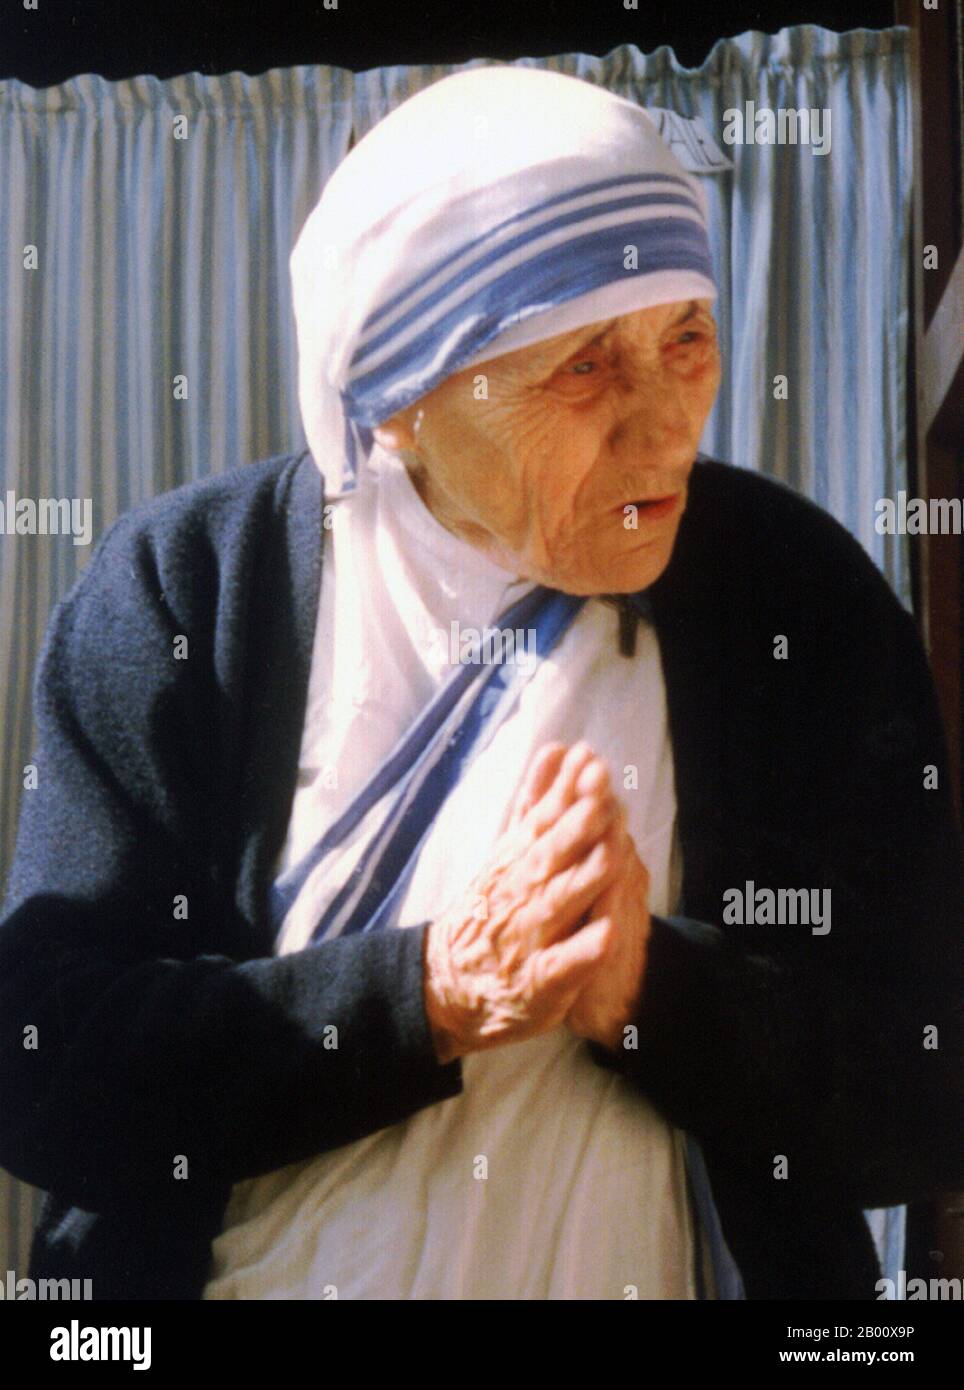 Albanie/Inde: Mère Teresa de Calcutta (1910-1997). Photo d'Evert Odekerken (licence CC BY 2.5), 1988. Mère Teresa (26 août 1910 – 5 septembre 1997), née Agnes Gonxha Bojaxhiu, était une religieuse catholique d'origine albanaise et de nationalité indienne, qui fonda les Missionnaires de la Charité à Calcutta, en Inde, en 1950. Pendant plus de 45 ans, elle a servi aux pauvres, aux malades, aux orphelins et aux mourants, tout en guidant l'expansion des Missionnaires de la Charité, d'abord dans toute l'Inde puis dans le monde entier. Après sa mort, elle a été béatifiée par le Pape Jean-Paul II, et a reçu le titre de bienheureuse Thérèse de Calcutta. Banque D'Images